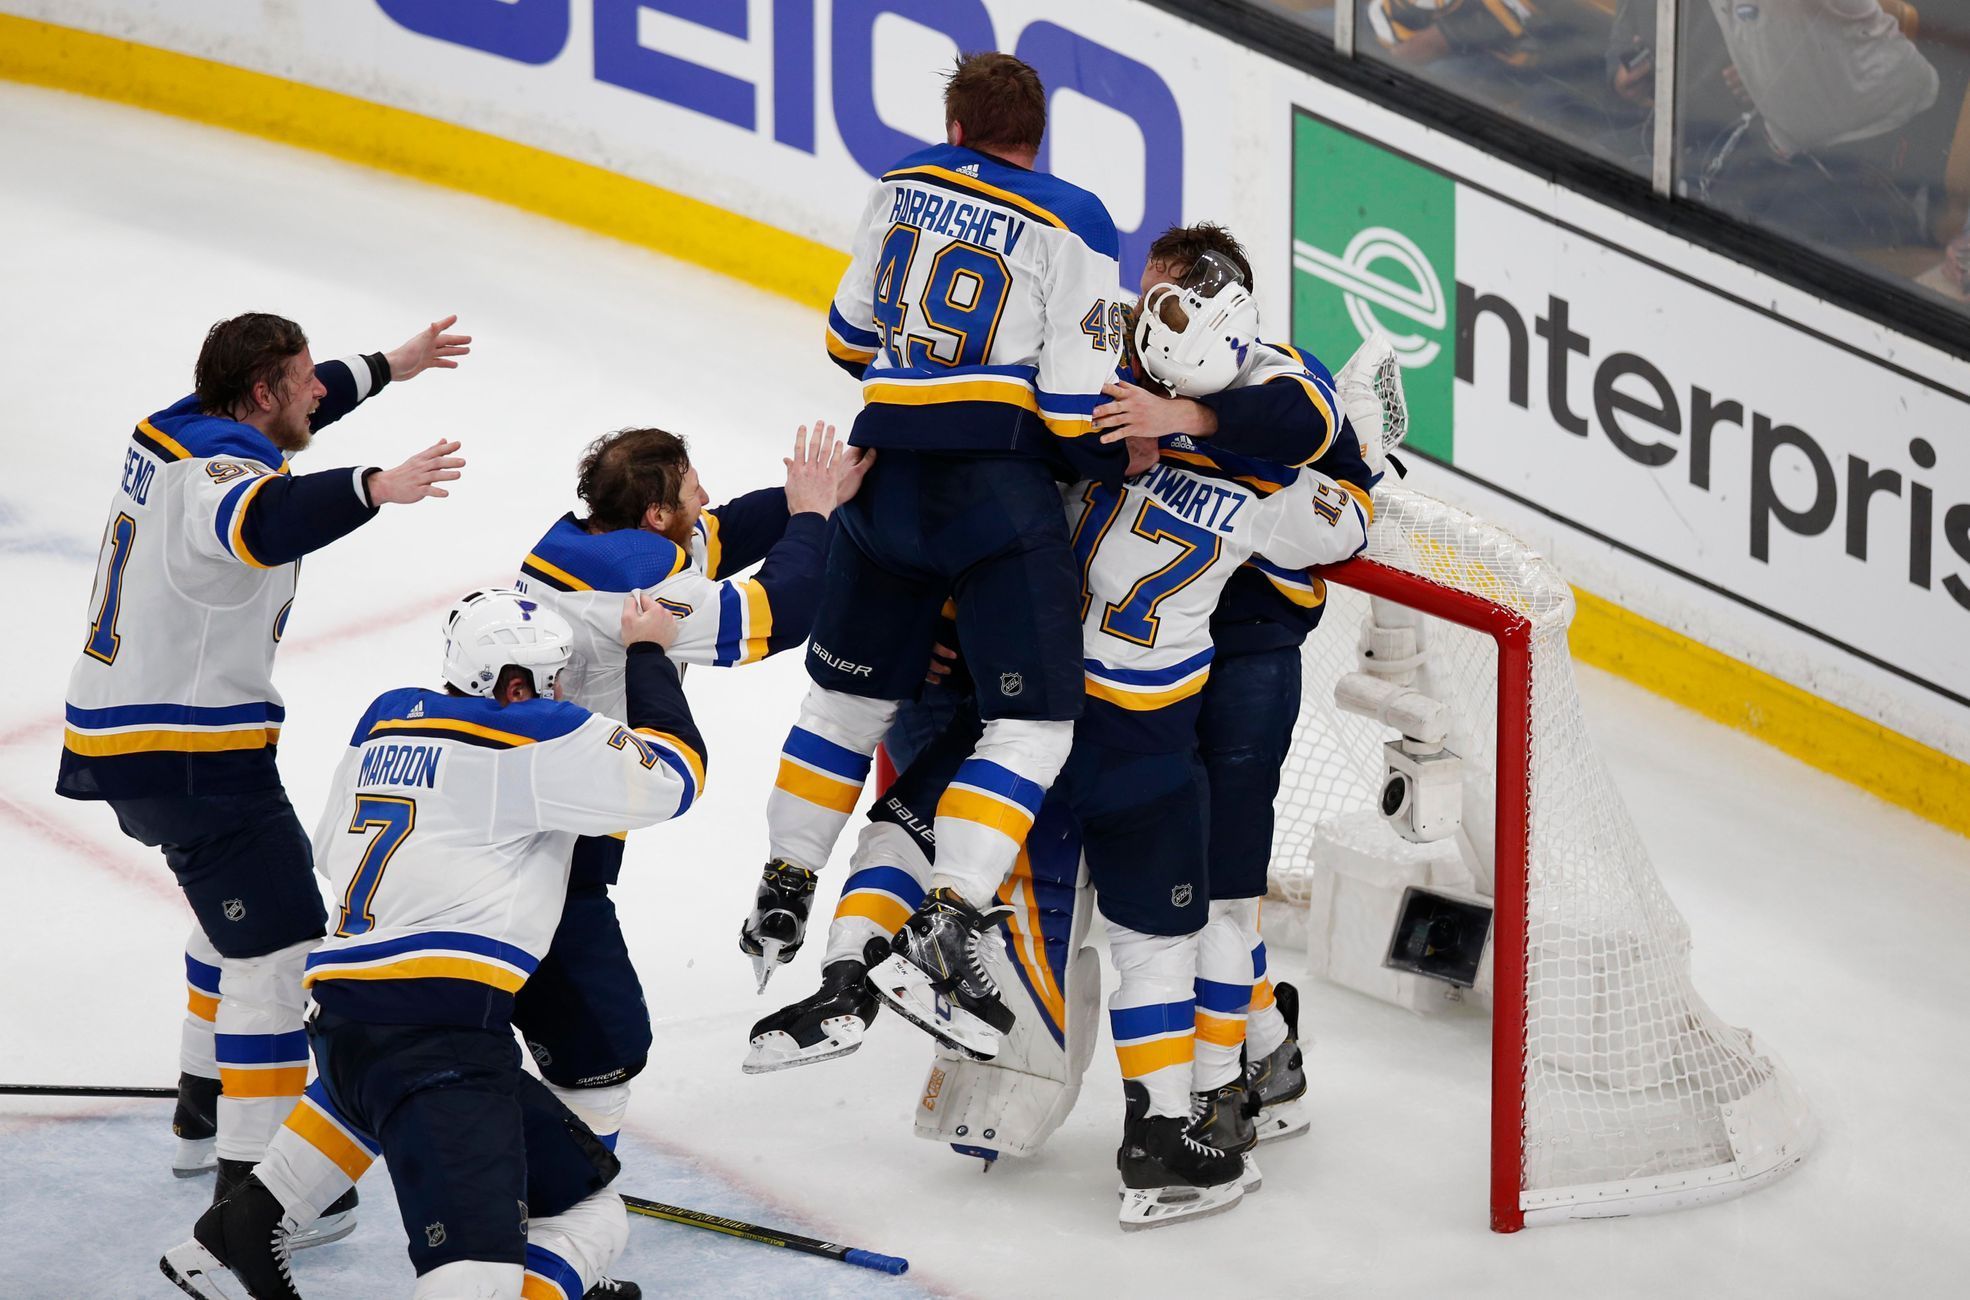 7. finále NHL 2018/19, Boston - St. Louis: Hokejisté St. Louis oslavují zisk Stanley Cupu.